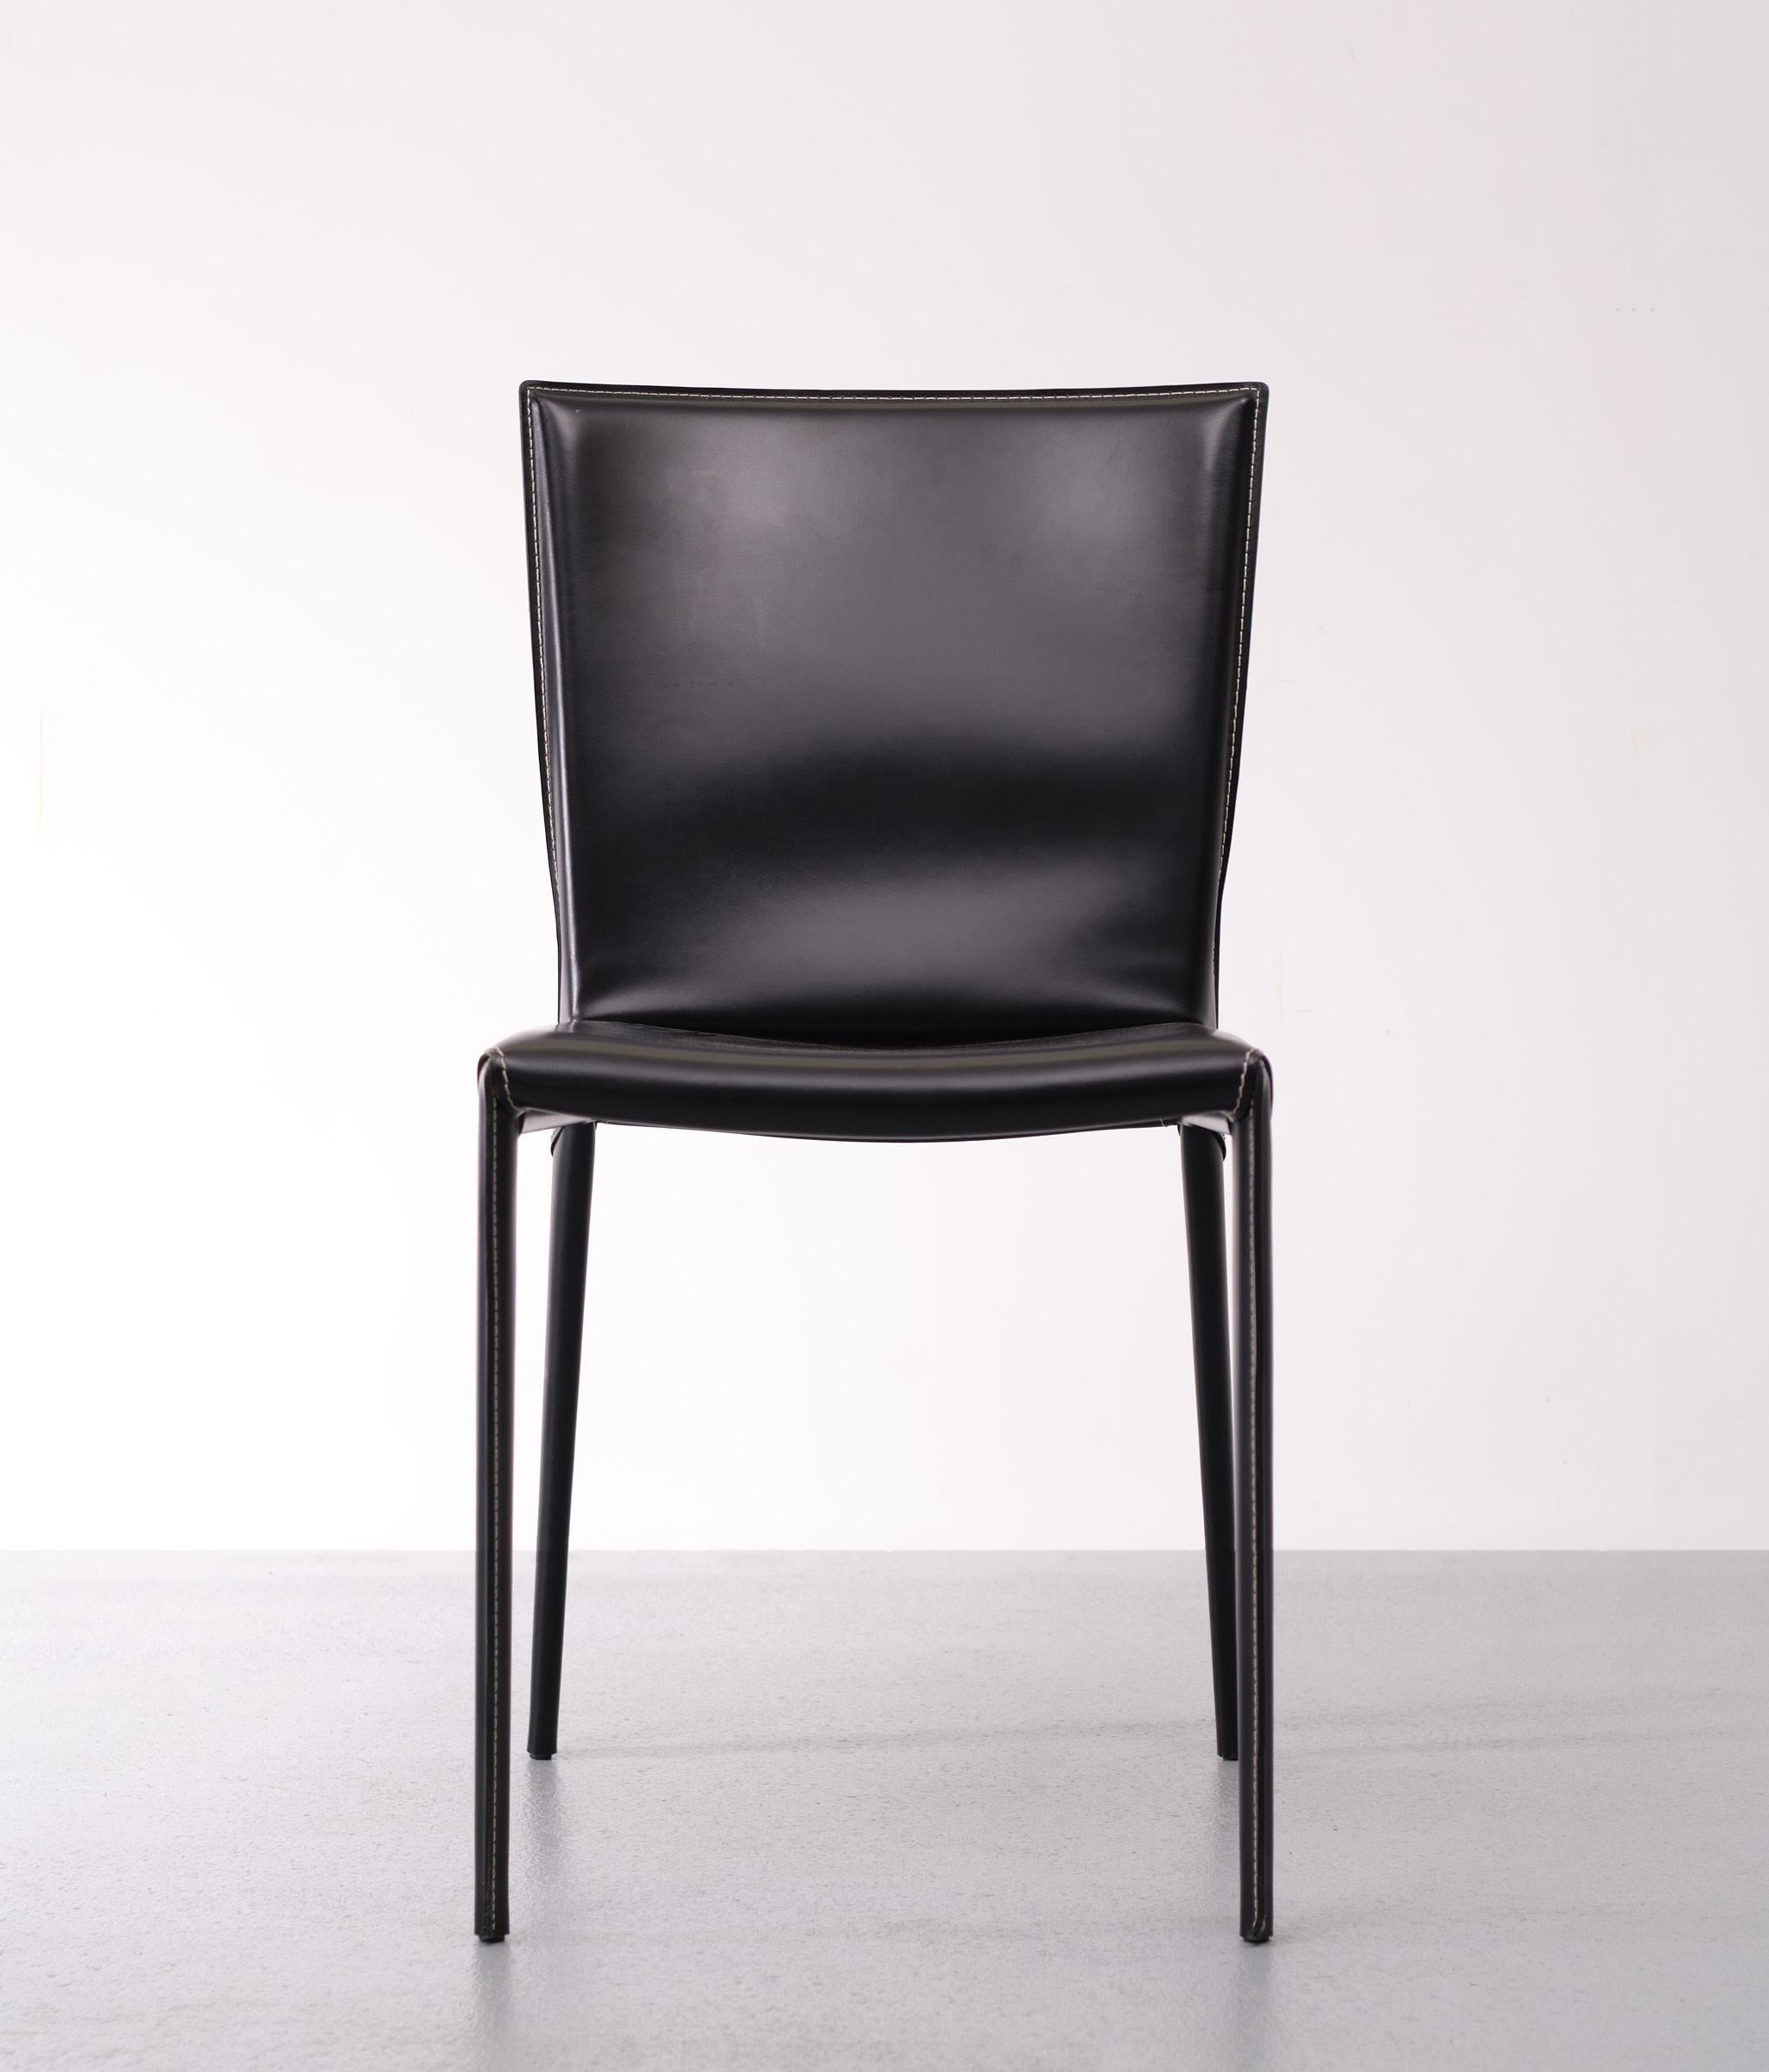 Der moderne Stuhl Beverly entspringt der Kreativität von Paolo Cattelan und verbindet eine elegante und raffinierte Persönlichkeit mit dem Komfort, der einen Designerstuhl von ausgezeichneter Qualität auszeichnet. Dieser Ledersessel, der für jeden